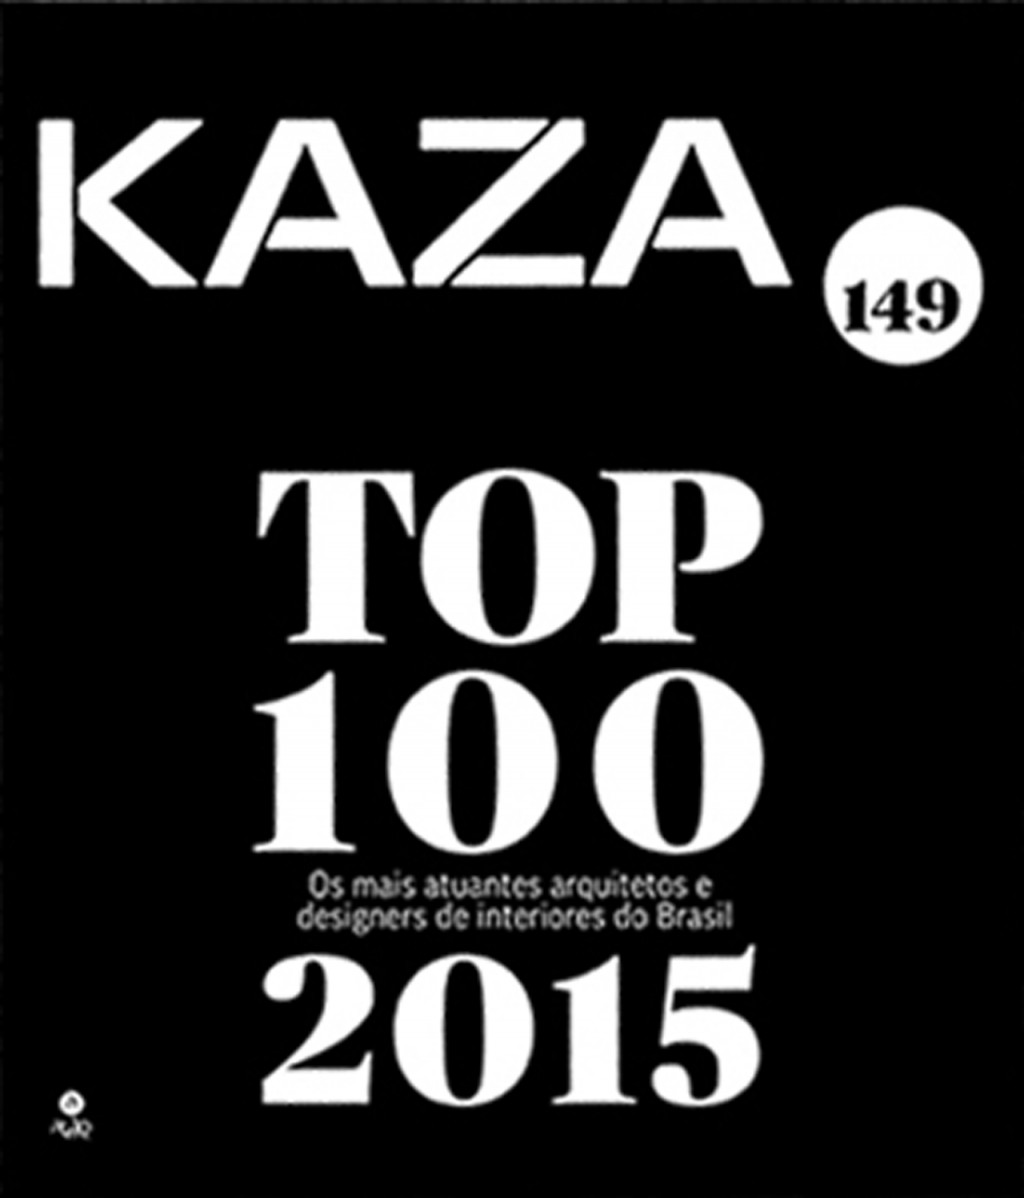 TOP 100 KAZA 2015